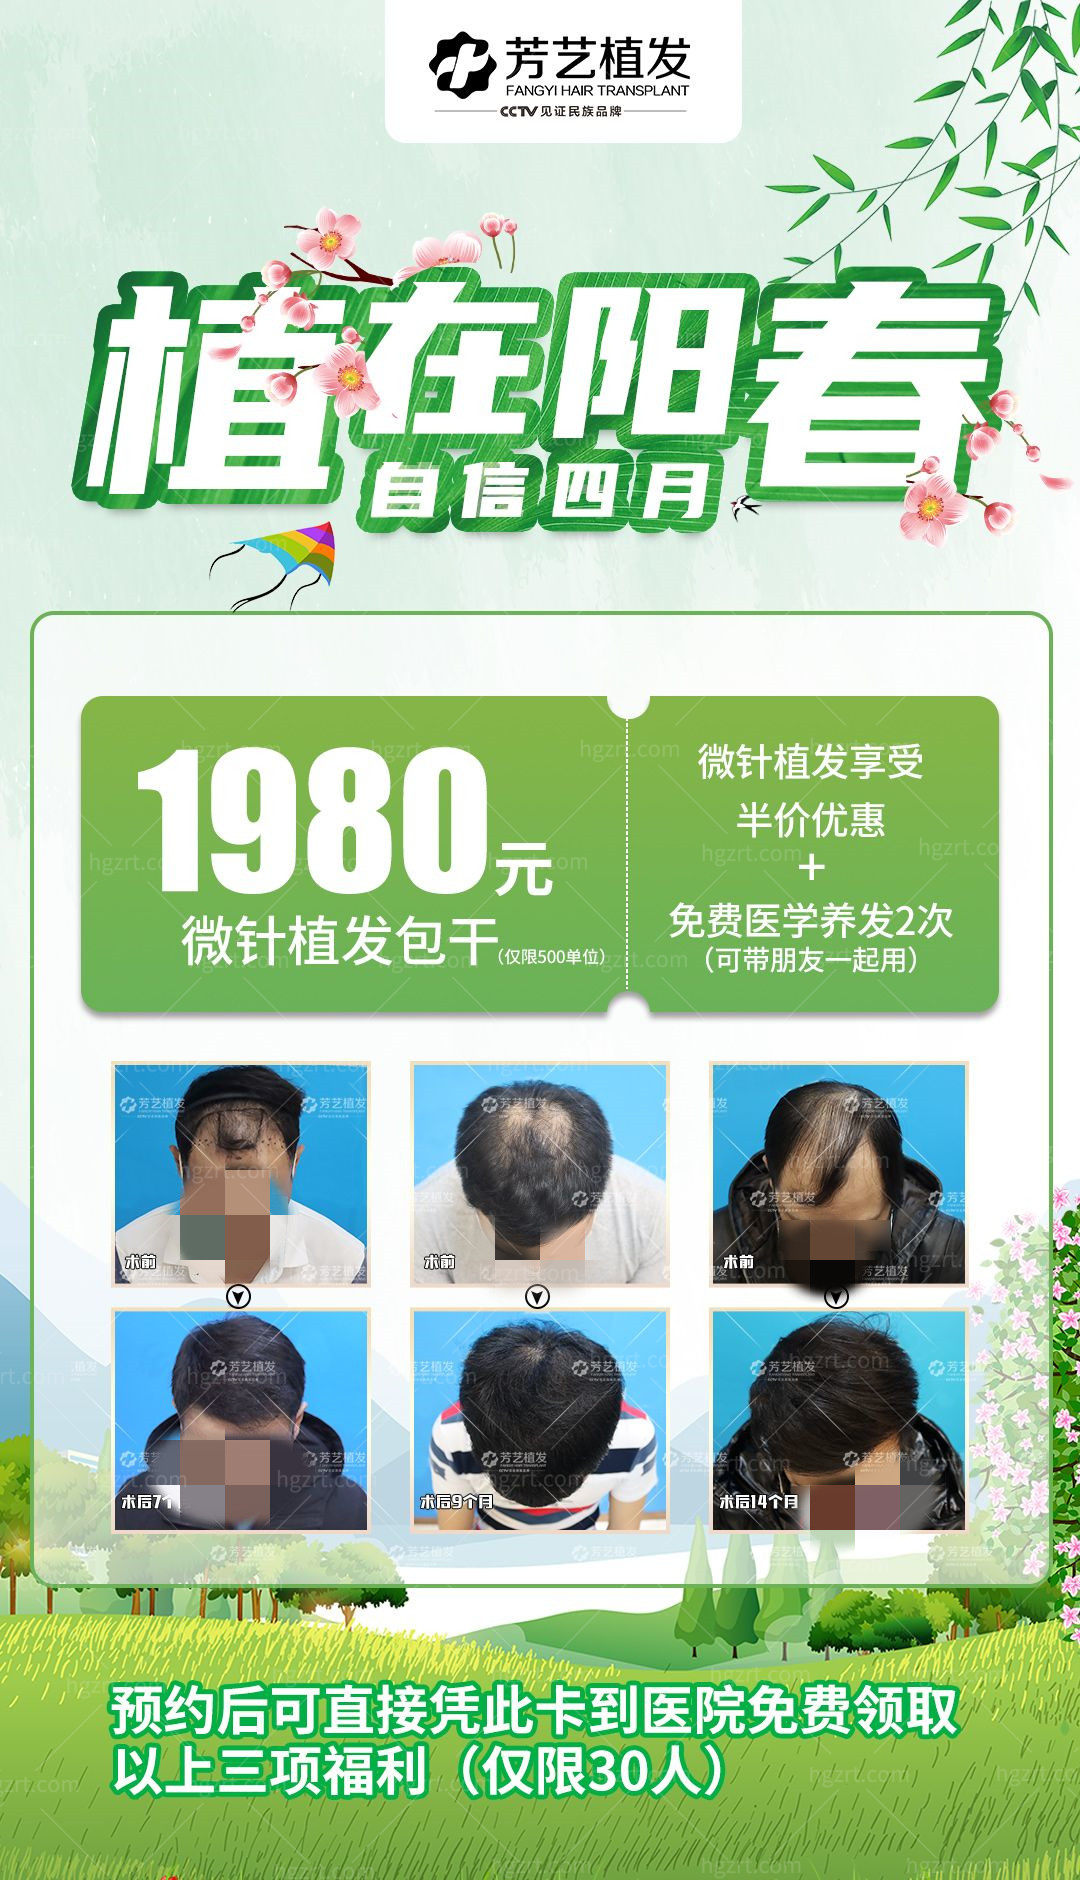 天啊撸！郑州芳艺植发医院技术太好了微针植发500单位才1980元起绝绝子啊！